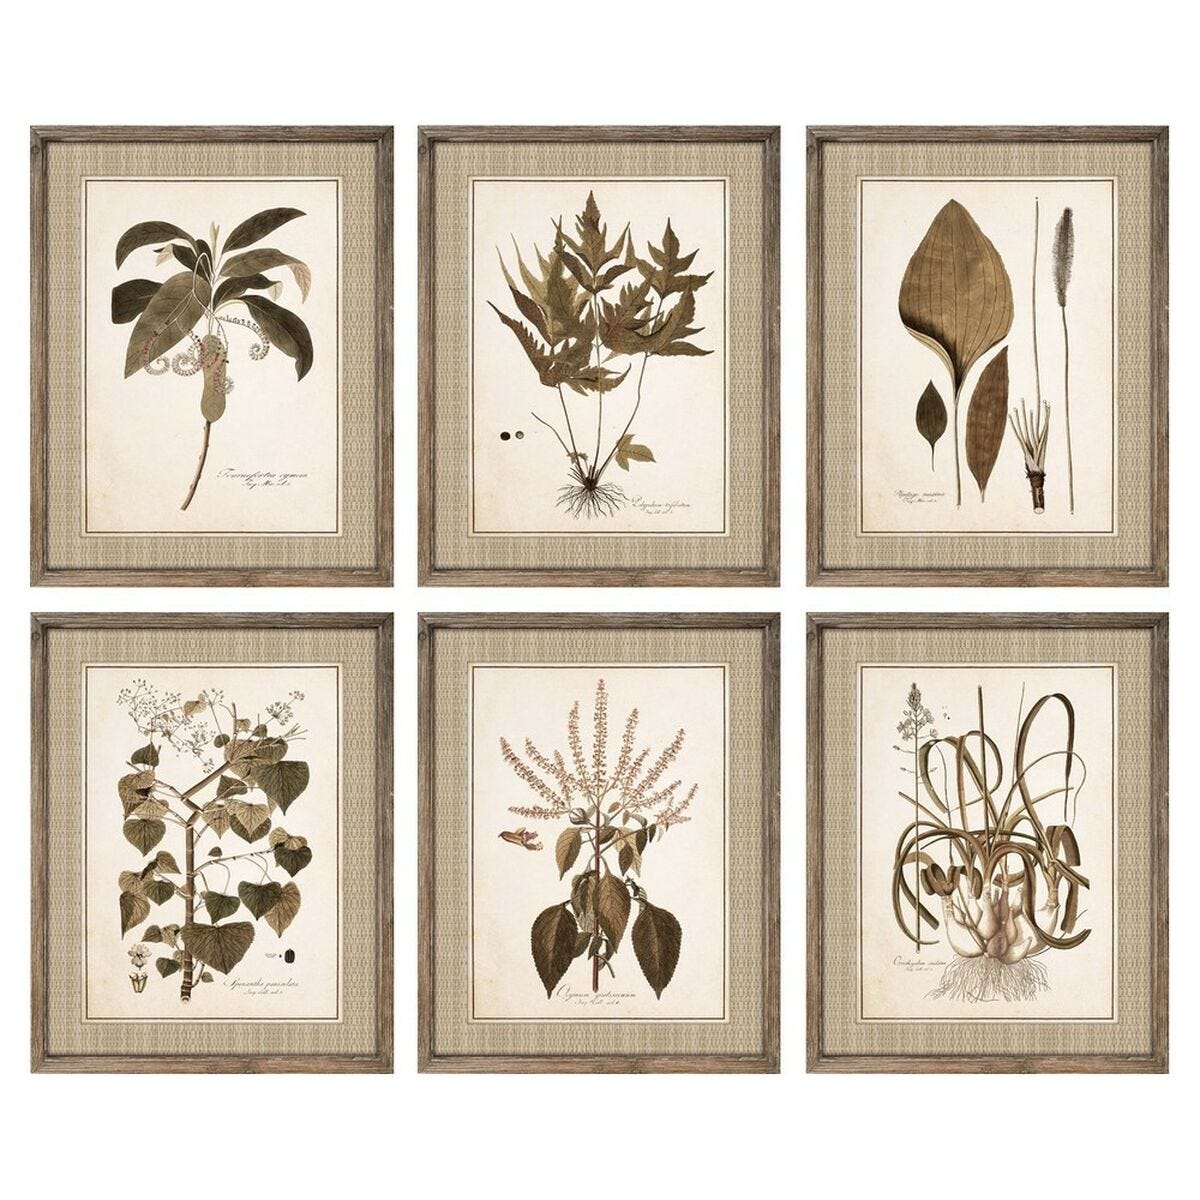 Plantas De Interior (24cm x 70cm c/u) – Cuadros Decorativos